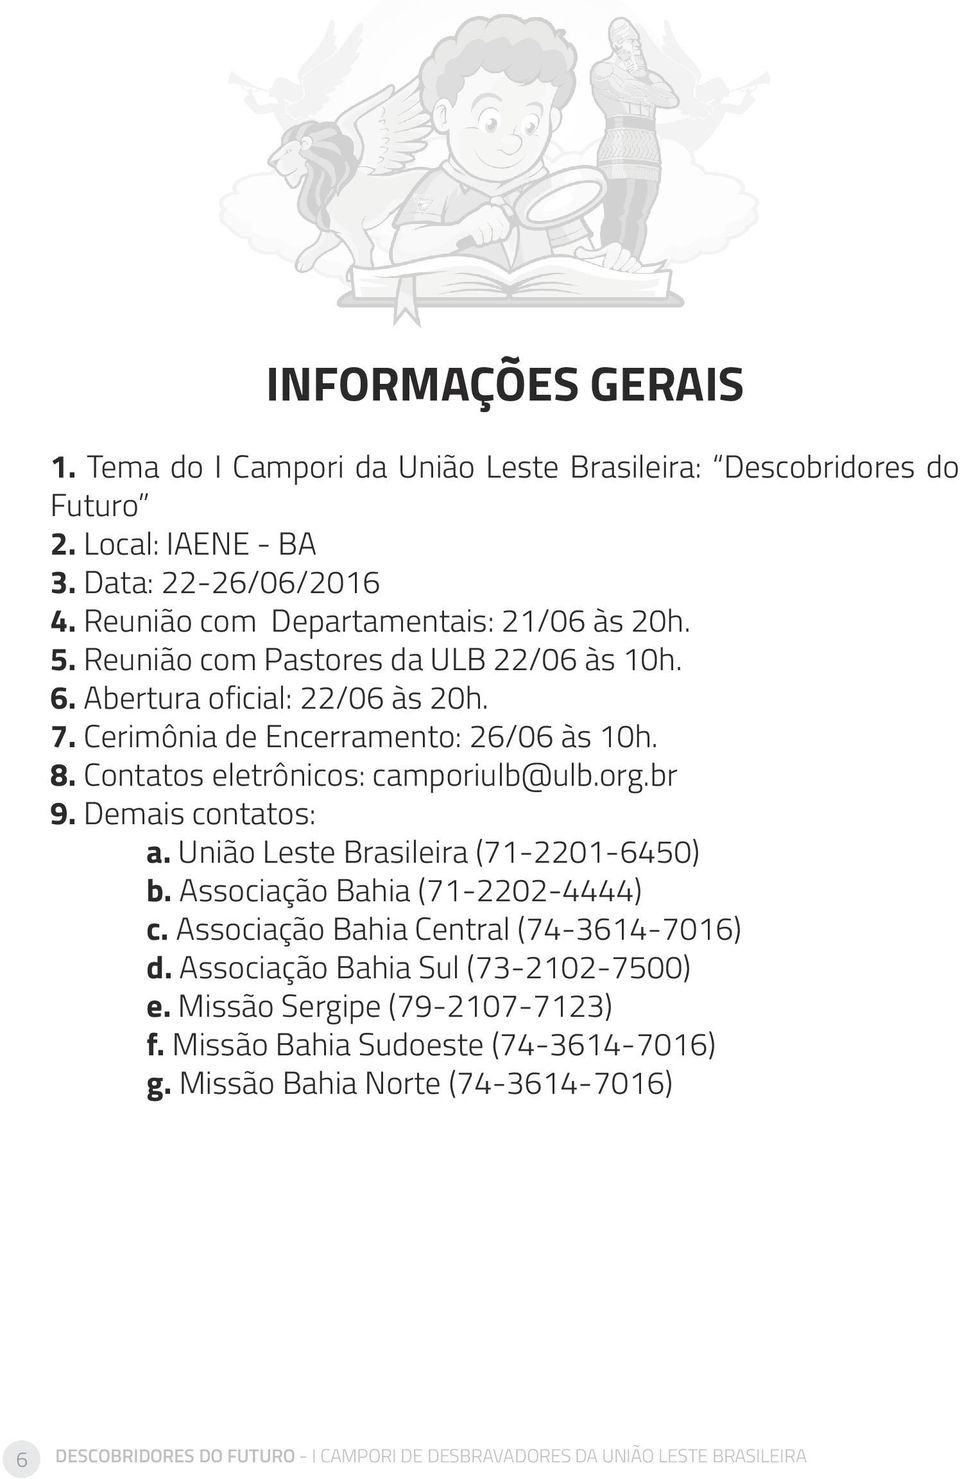 Demais contatos: a. União Leste Brasileira (71-2201-6450) b. Associação Bahia (71-2202-4444) c. Associação Bahia Central (74-3614-7016) d. Associação Bahia Sul (73-2102-7500) e.